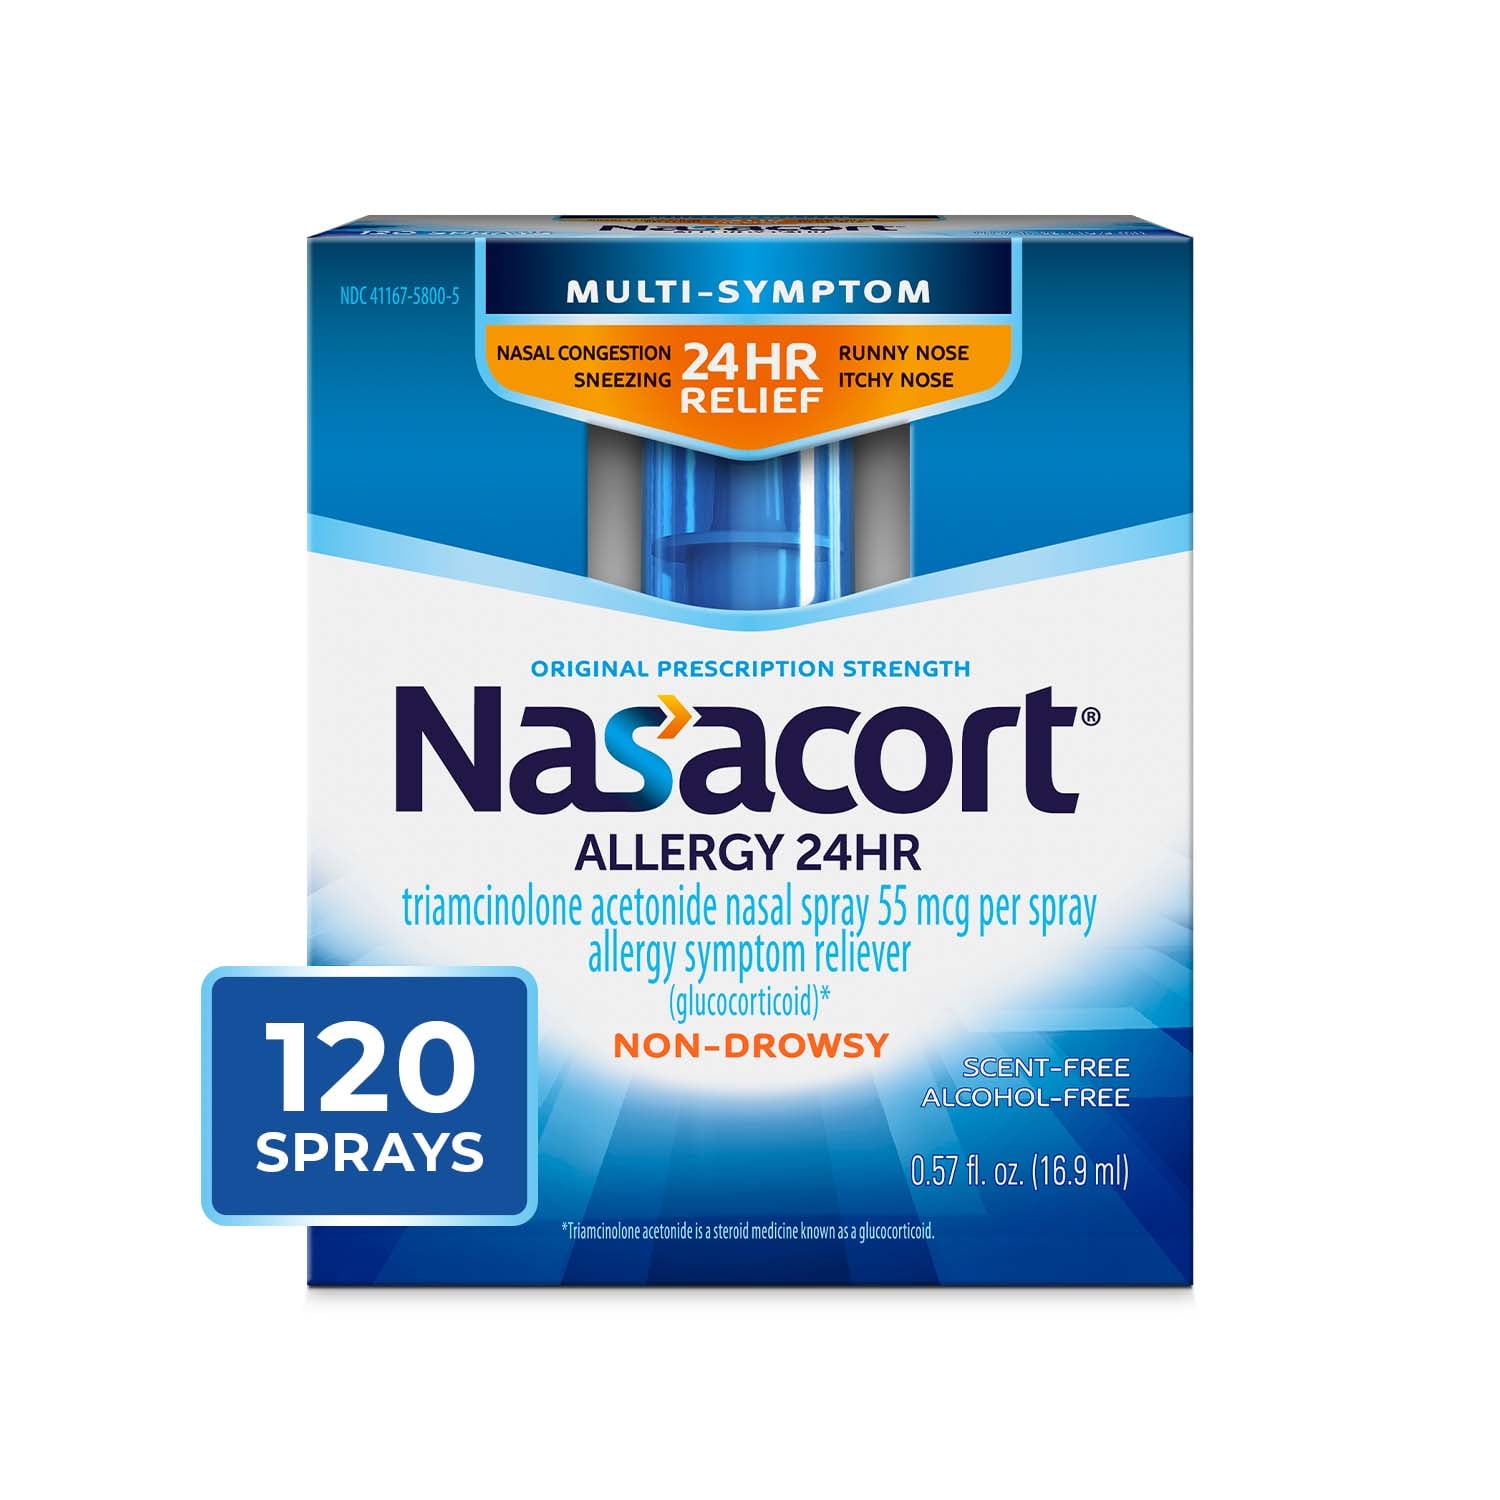 Nasacort 24HR Allergy Nasal Spray, Non-drowsy, 0.57 fl. oz.